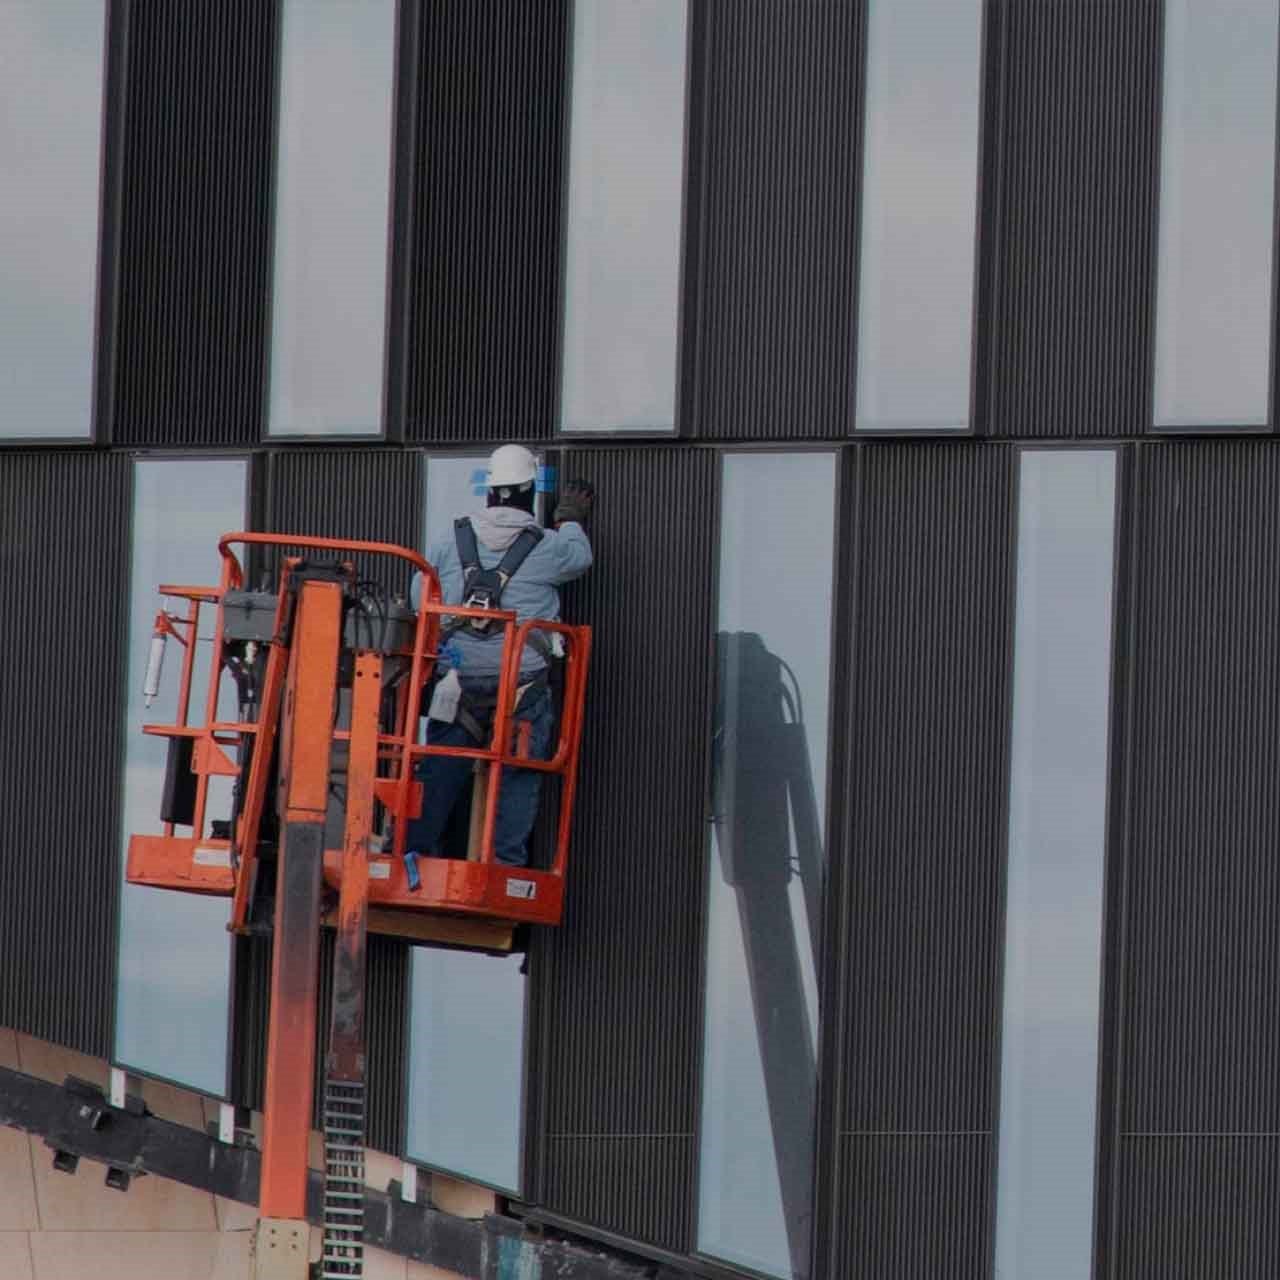 Un ouvrier dans une nacelle louée chez Simplex face à un mur noir et blanc qui est entrain de travailler sur un chantier en hauteur.